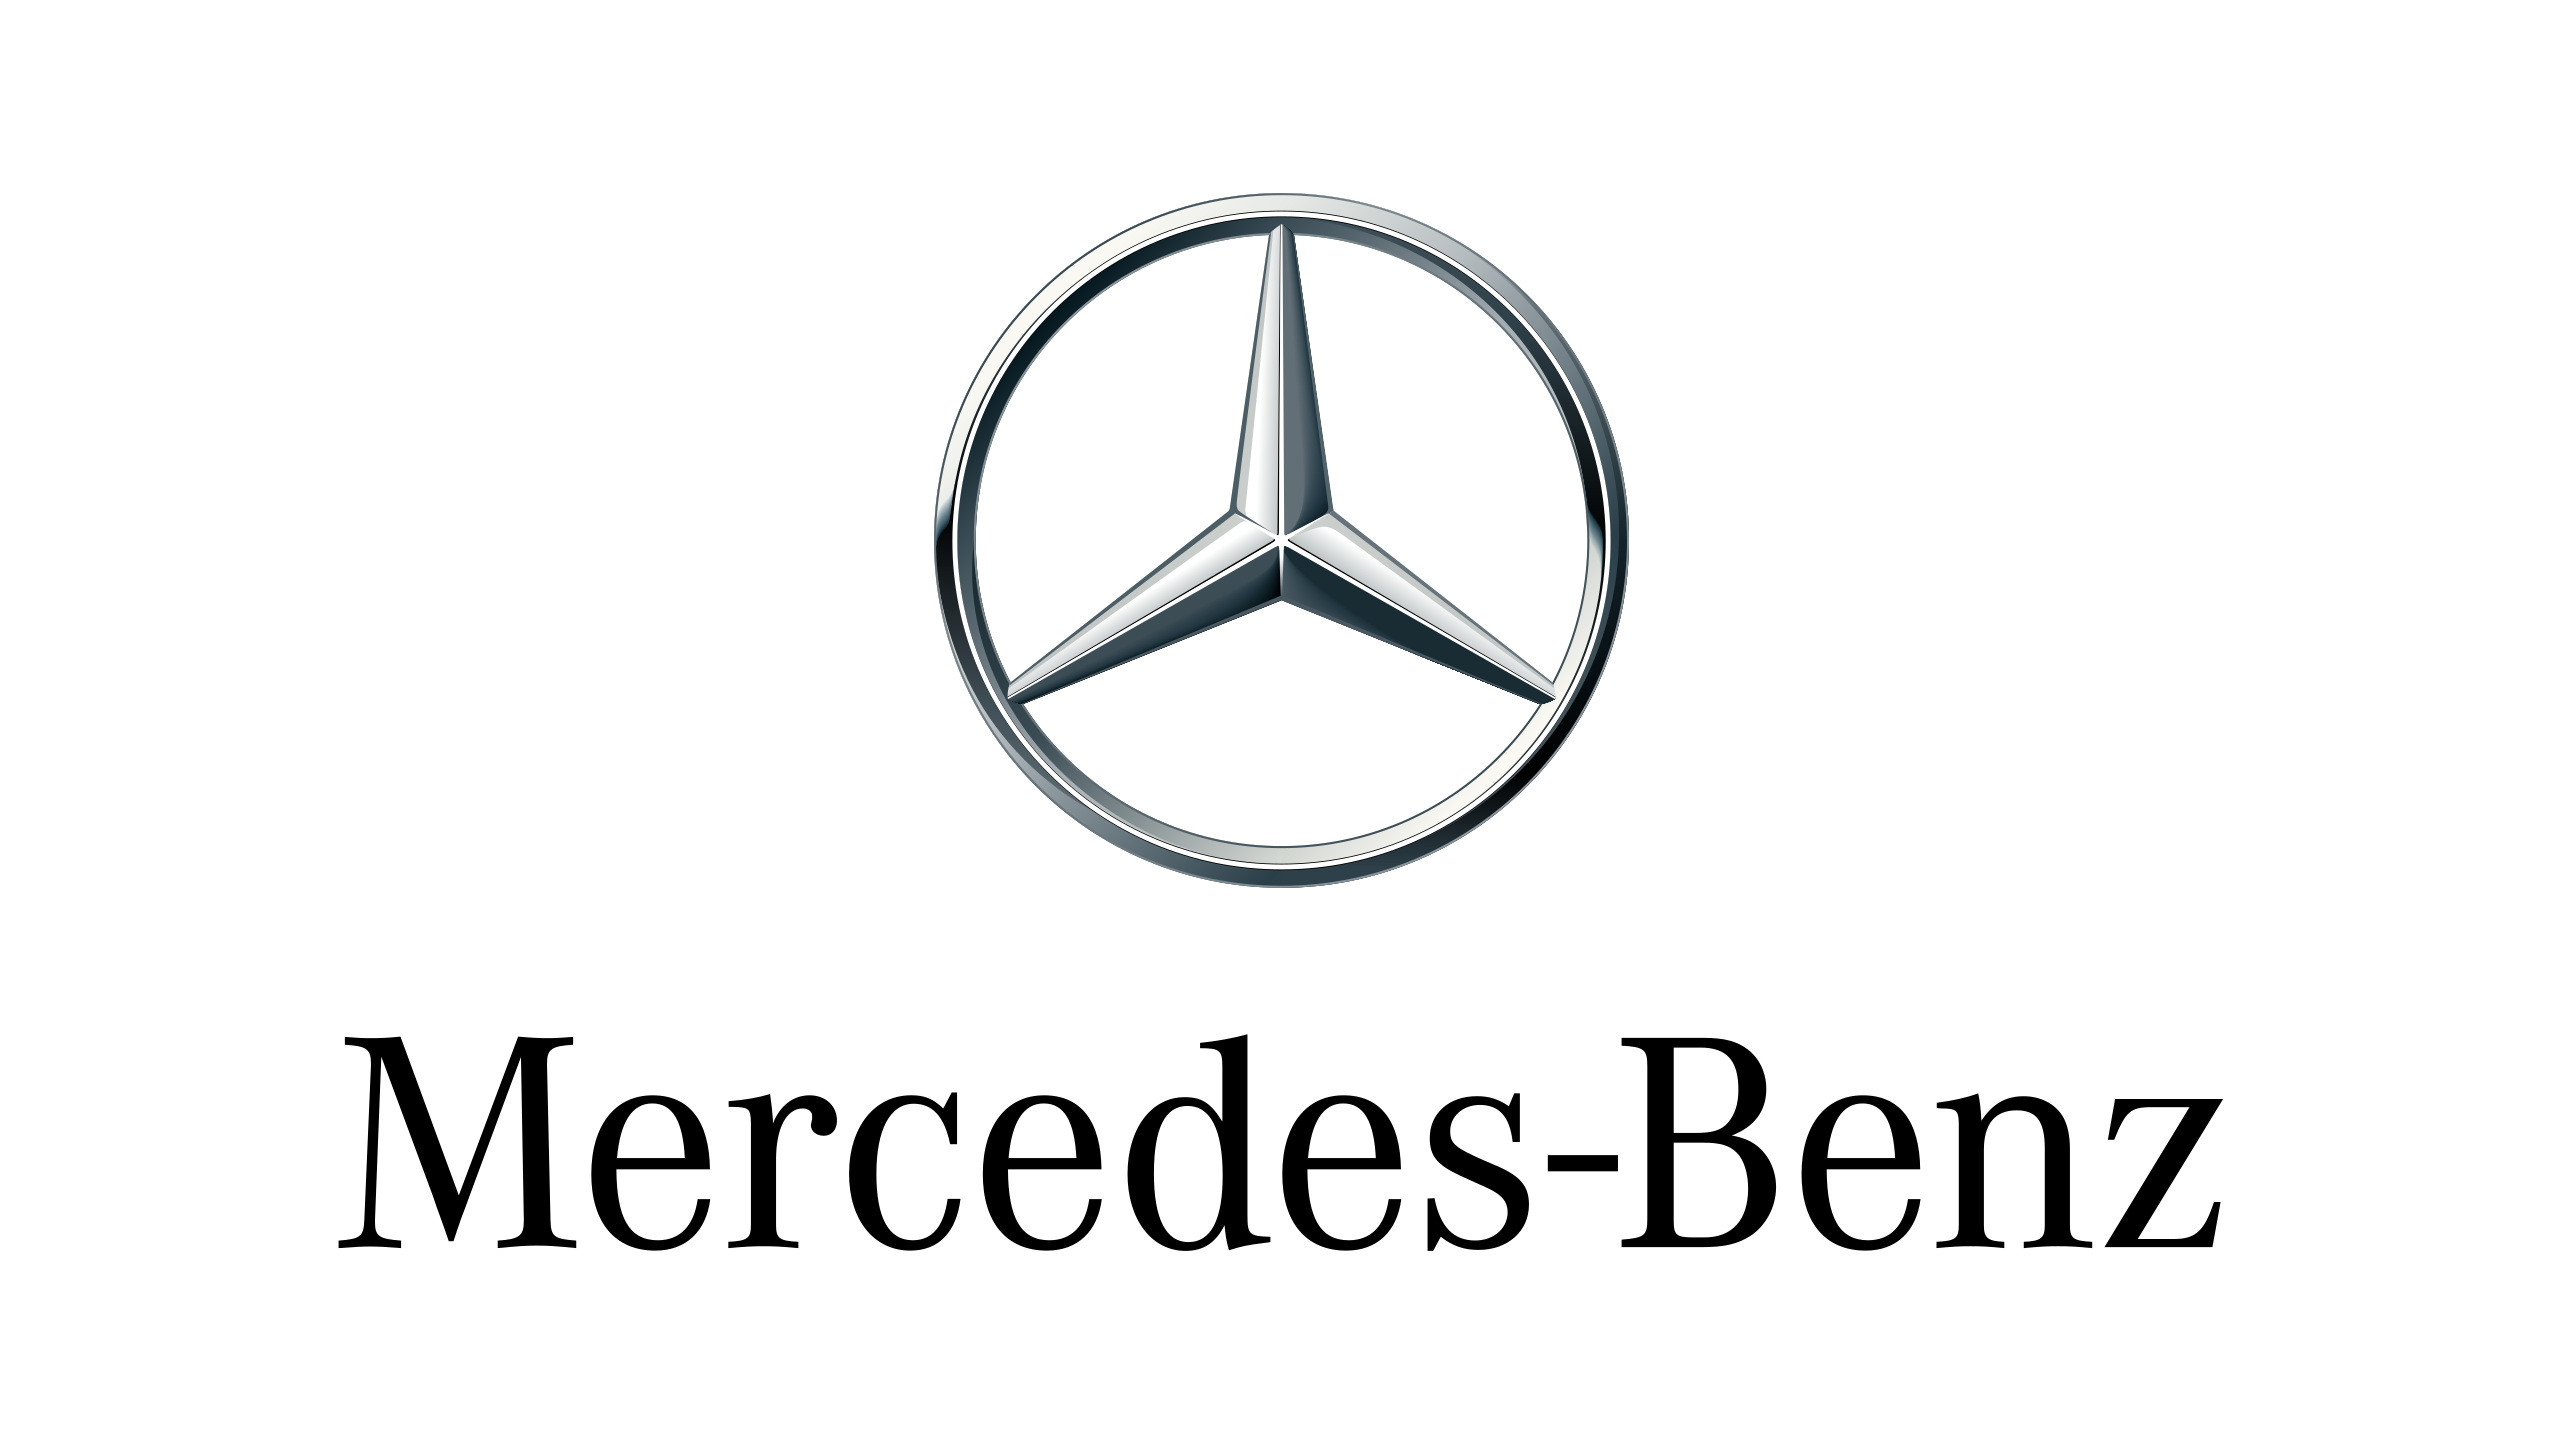 Mercedes-Maybach – Wikipedia